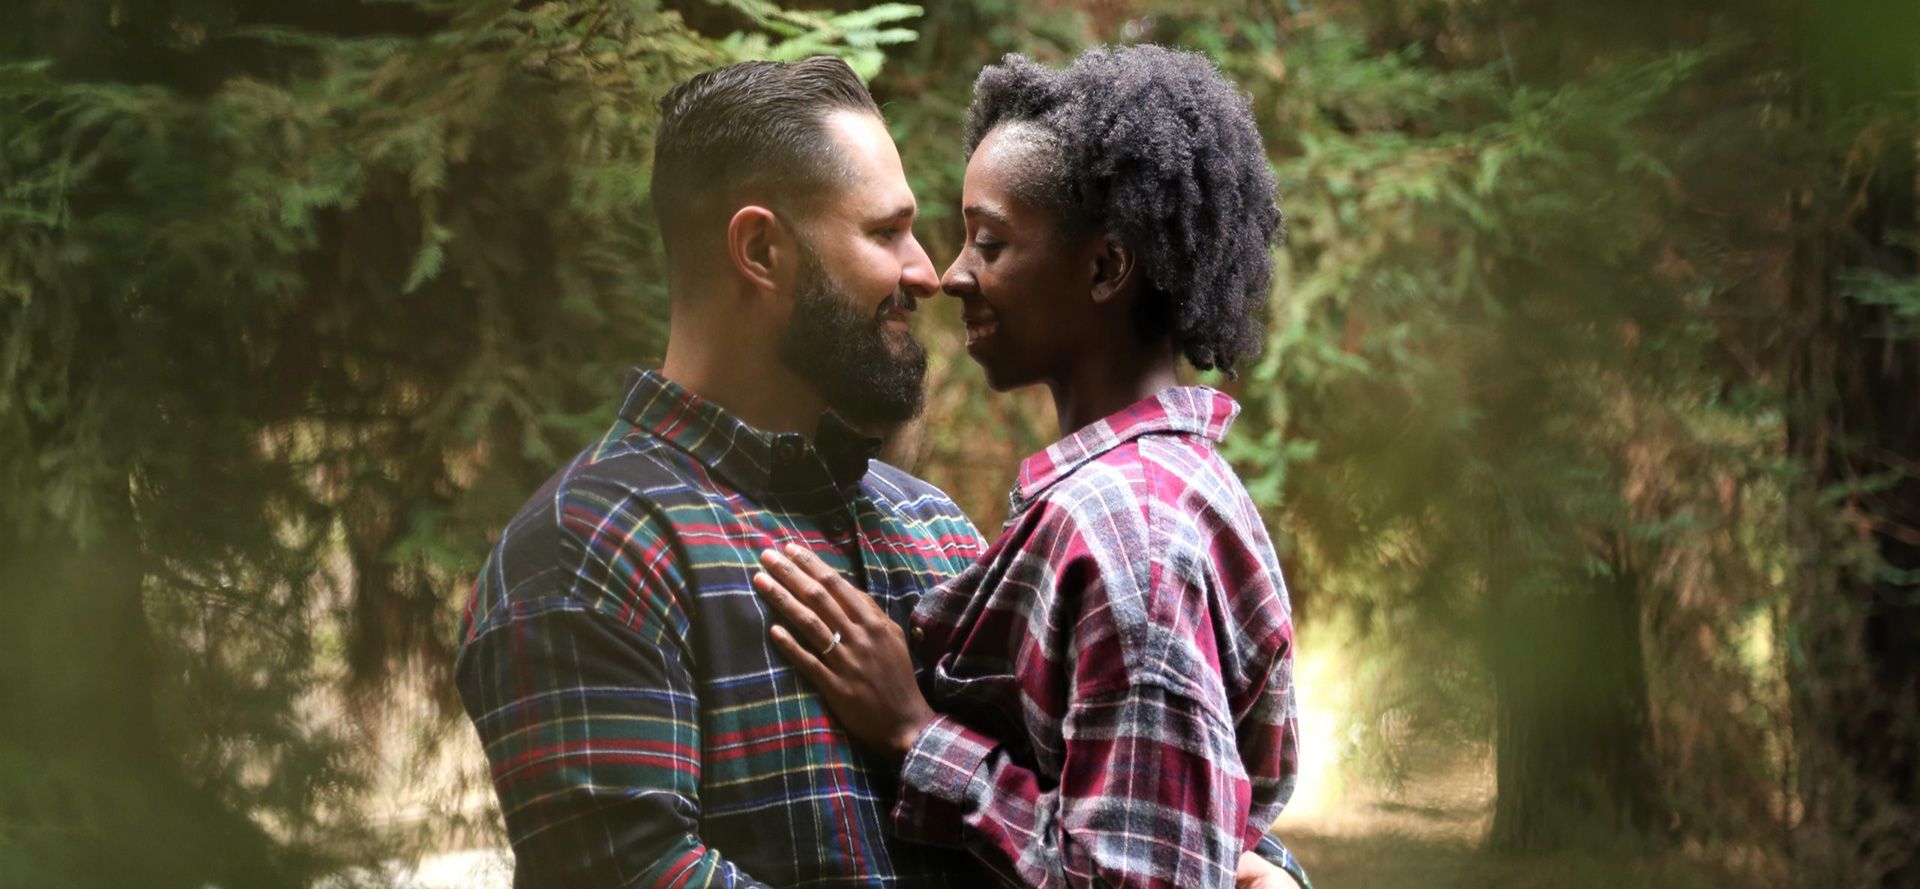 Vit man och svart kvinna på dejt i skogen.